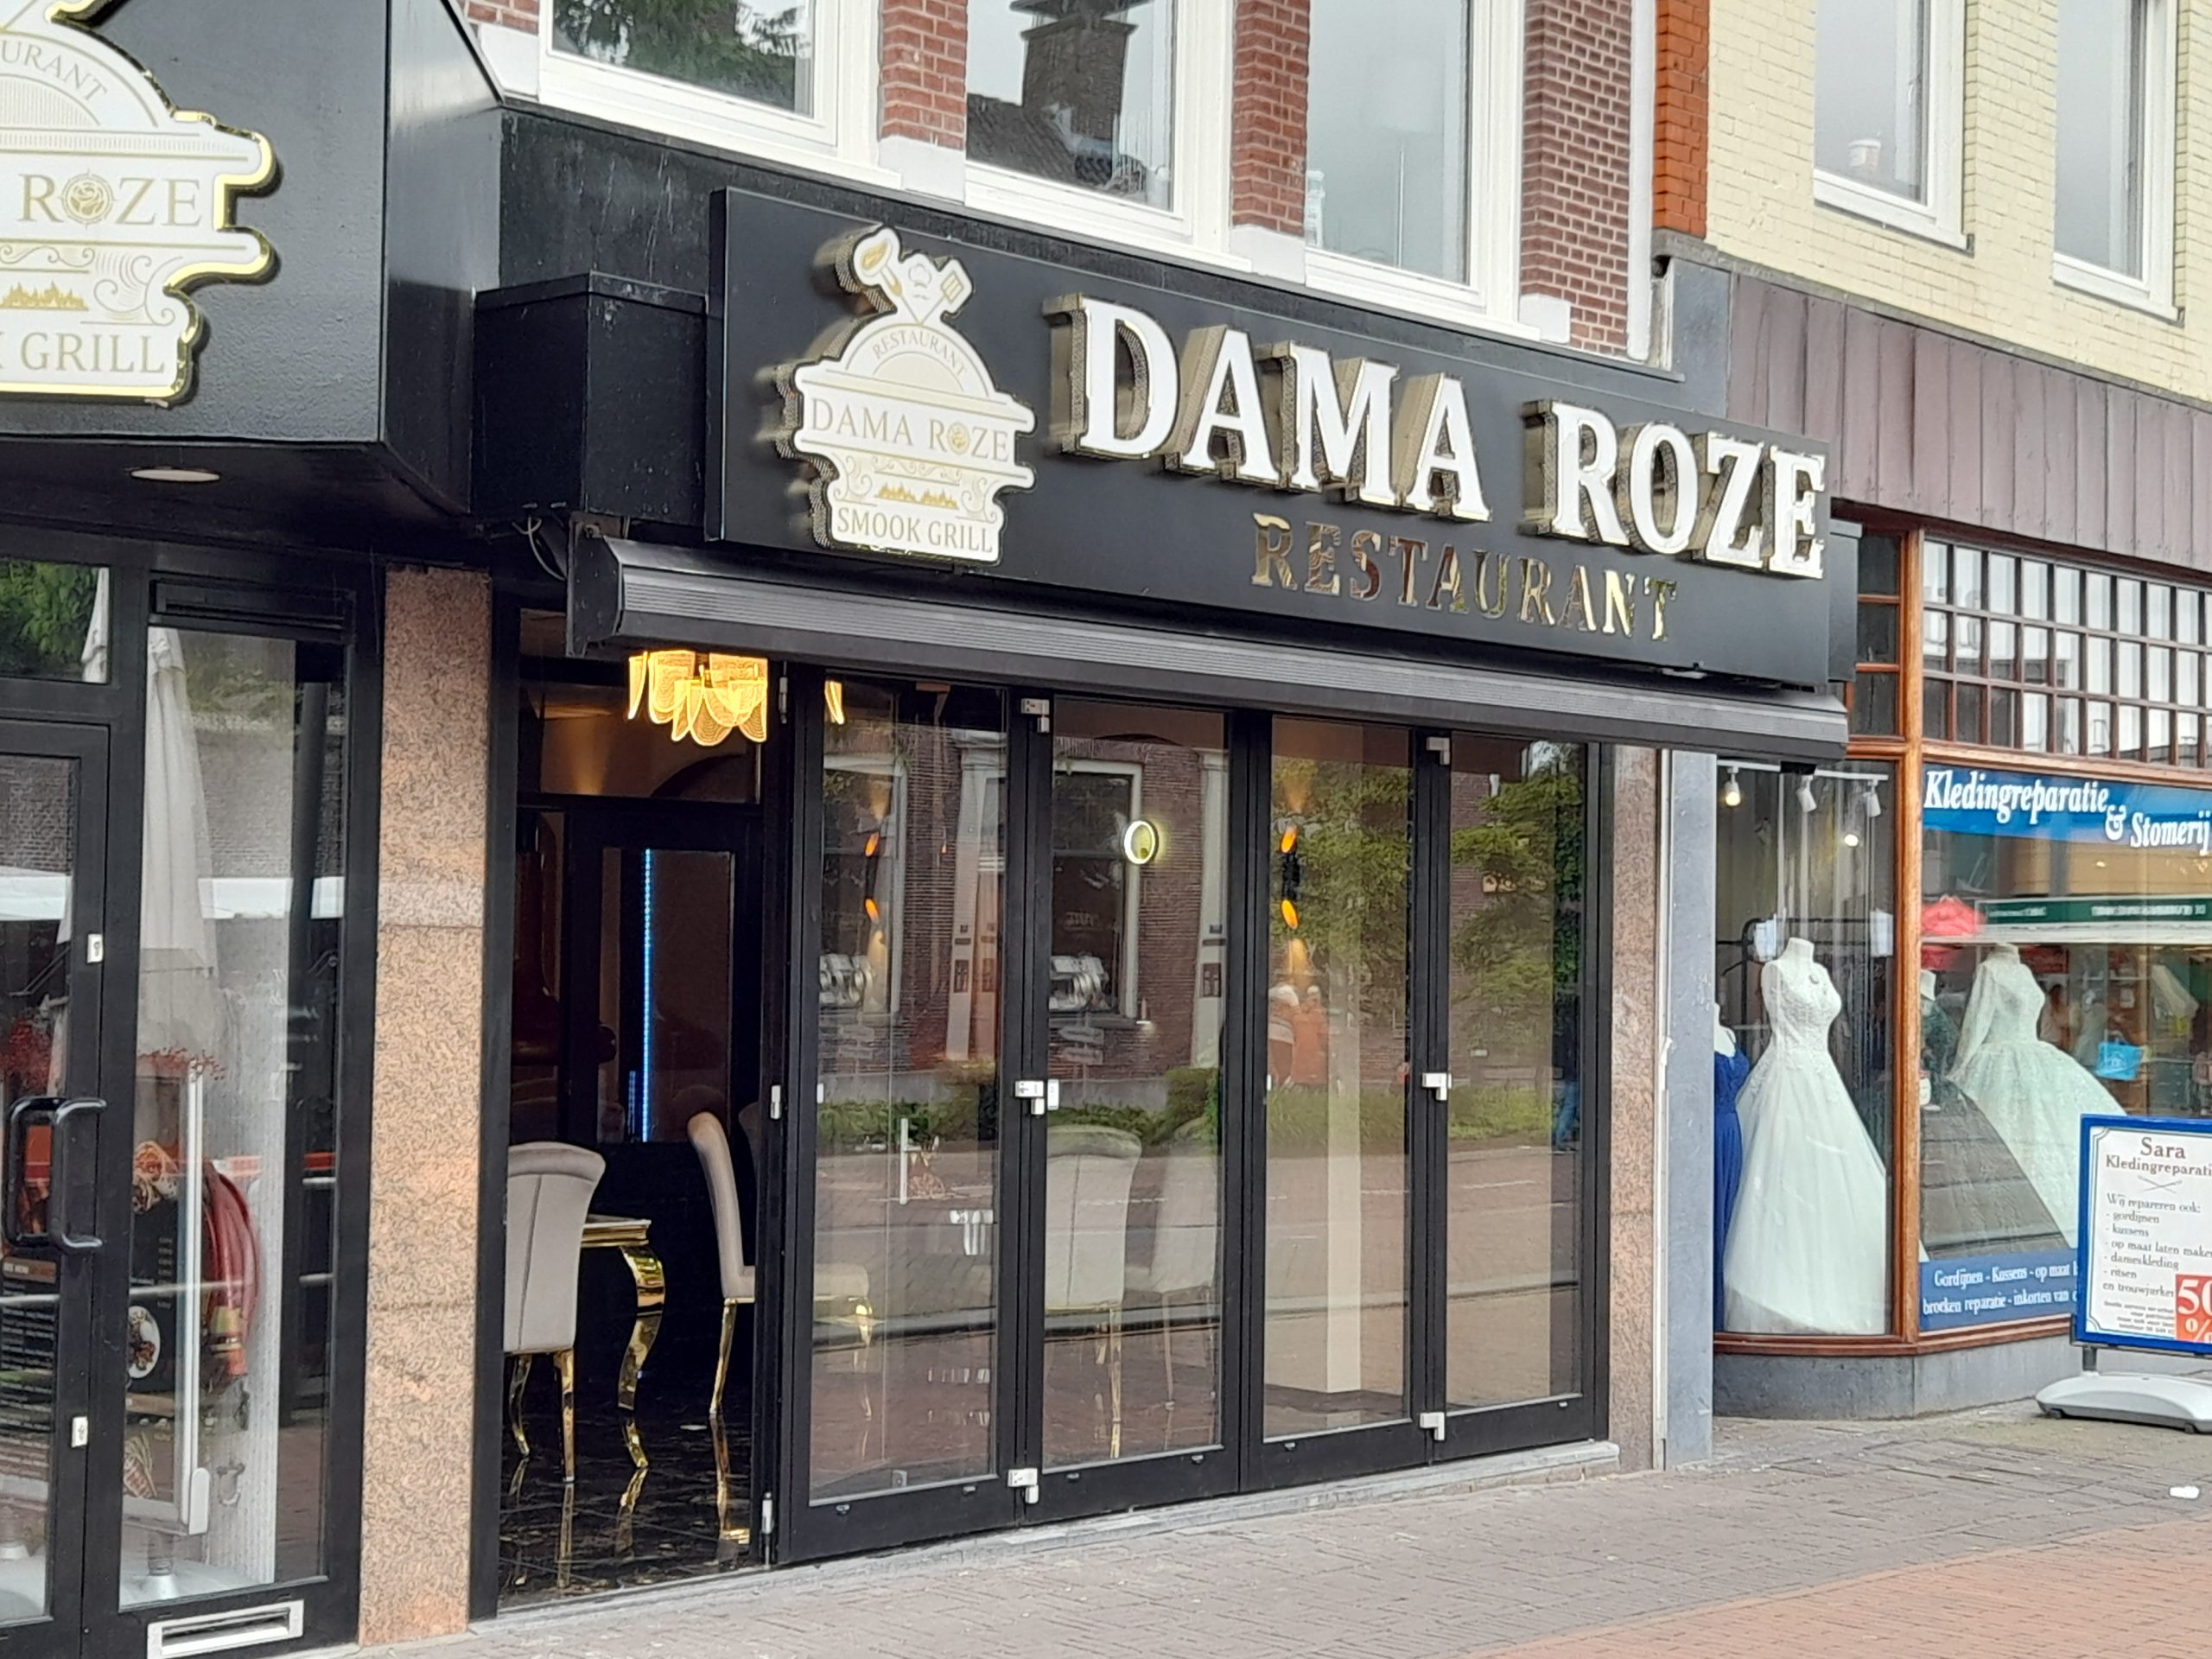 Restaurant Dama Roze